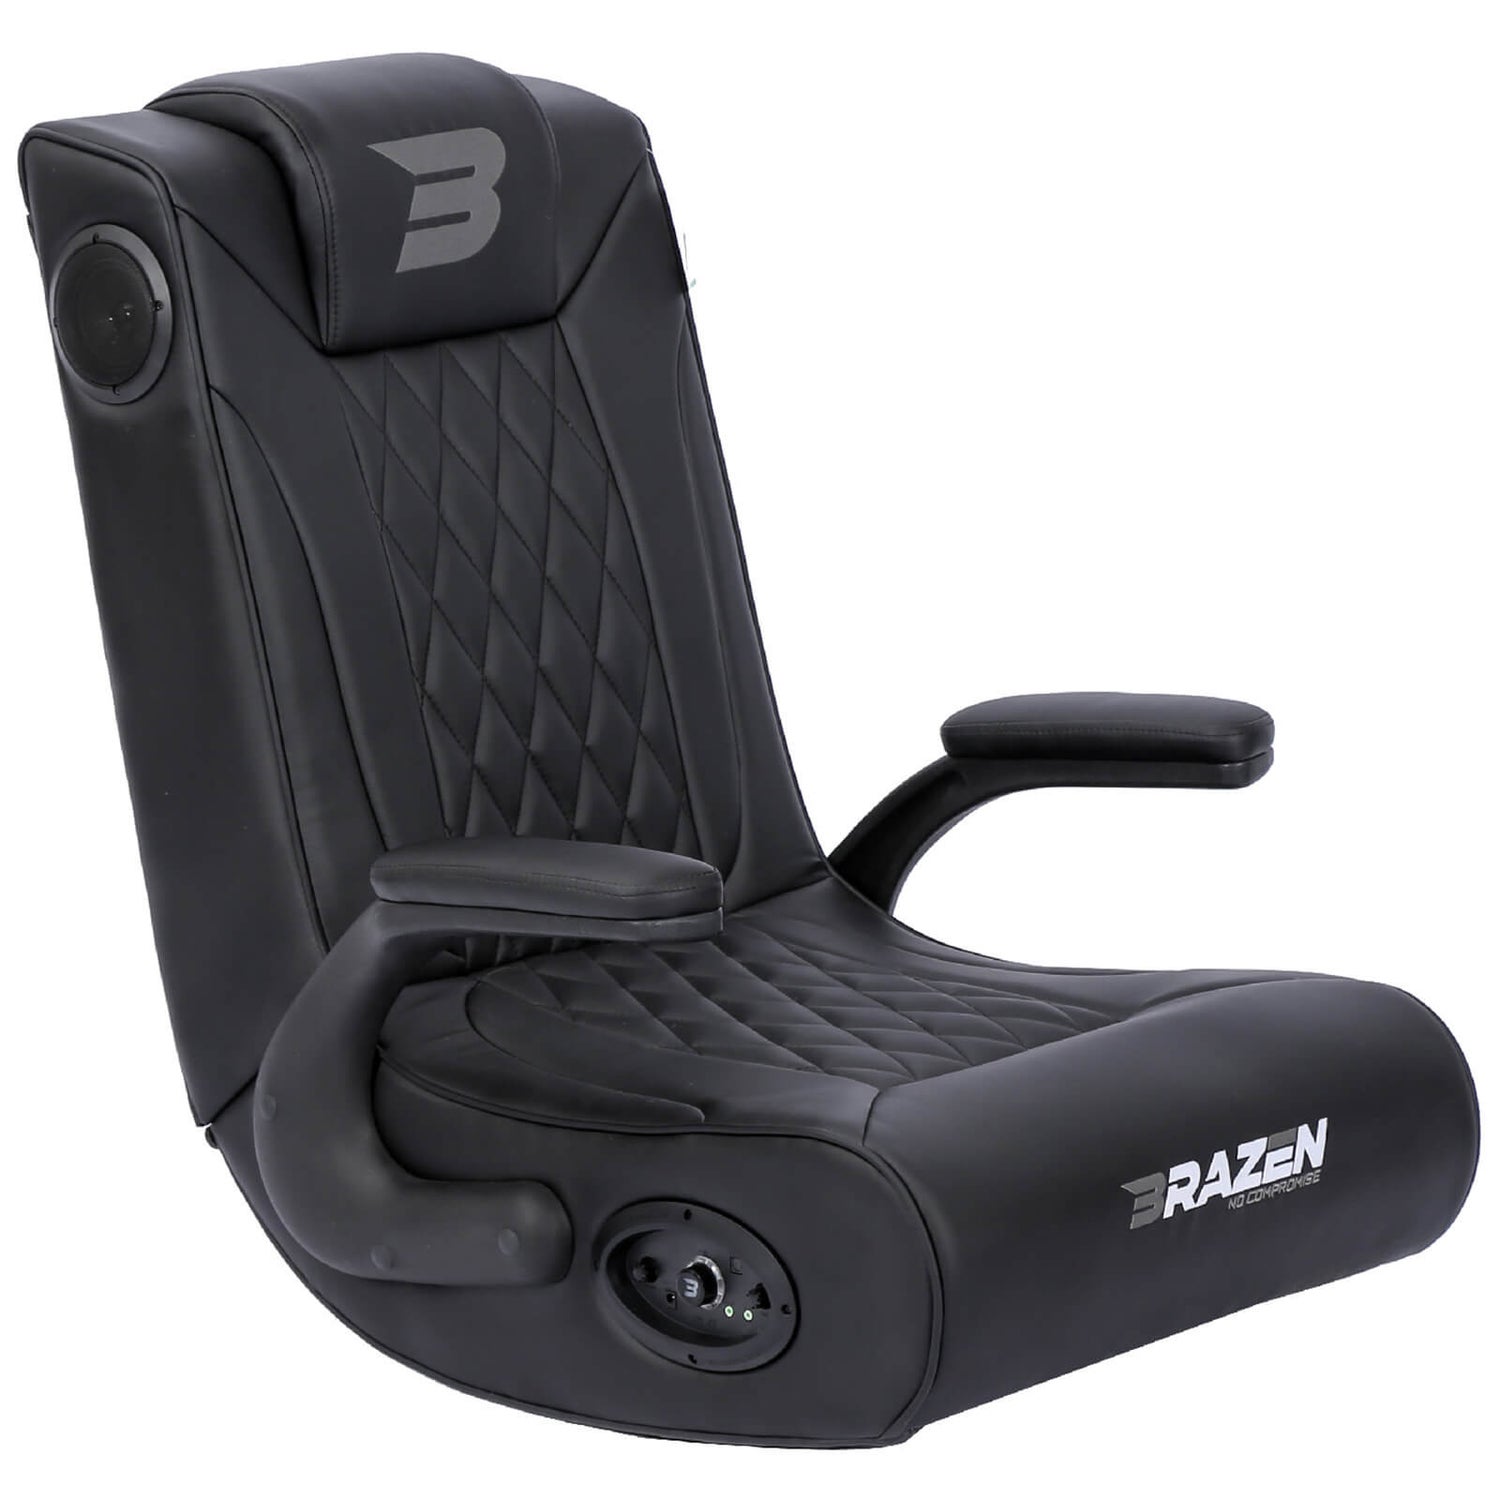 BraZen Emperor X 2.1 Elilte Esports DAB Surround Sound Gaming Chair